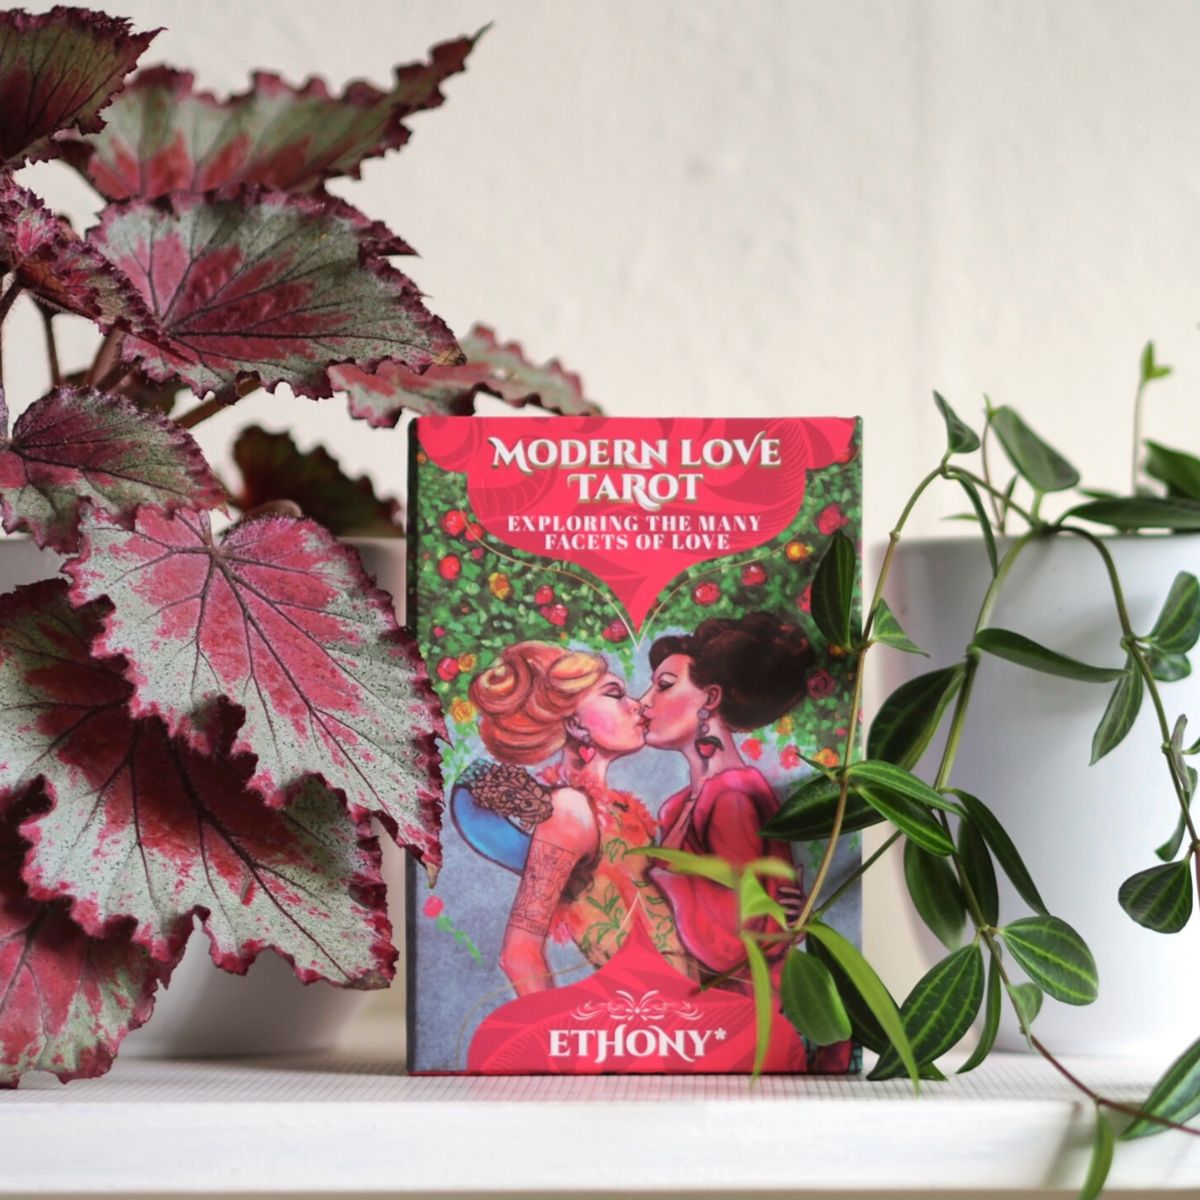 Modern Love Tarot - Exploring The Many Facets of Love – Ethony Tarot